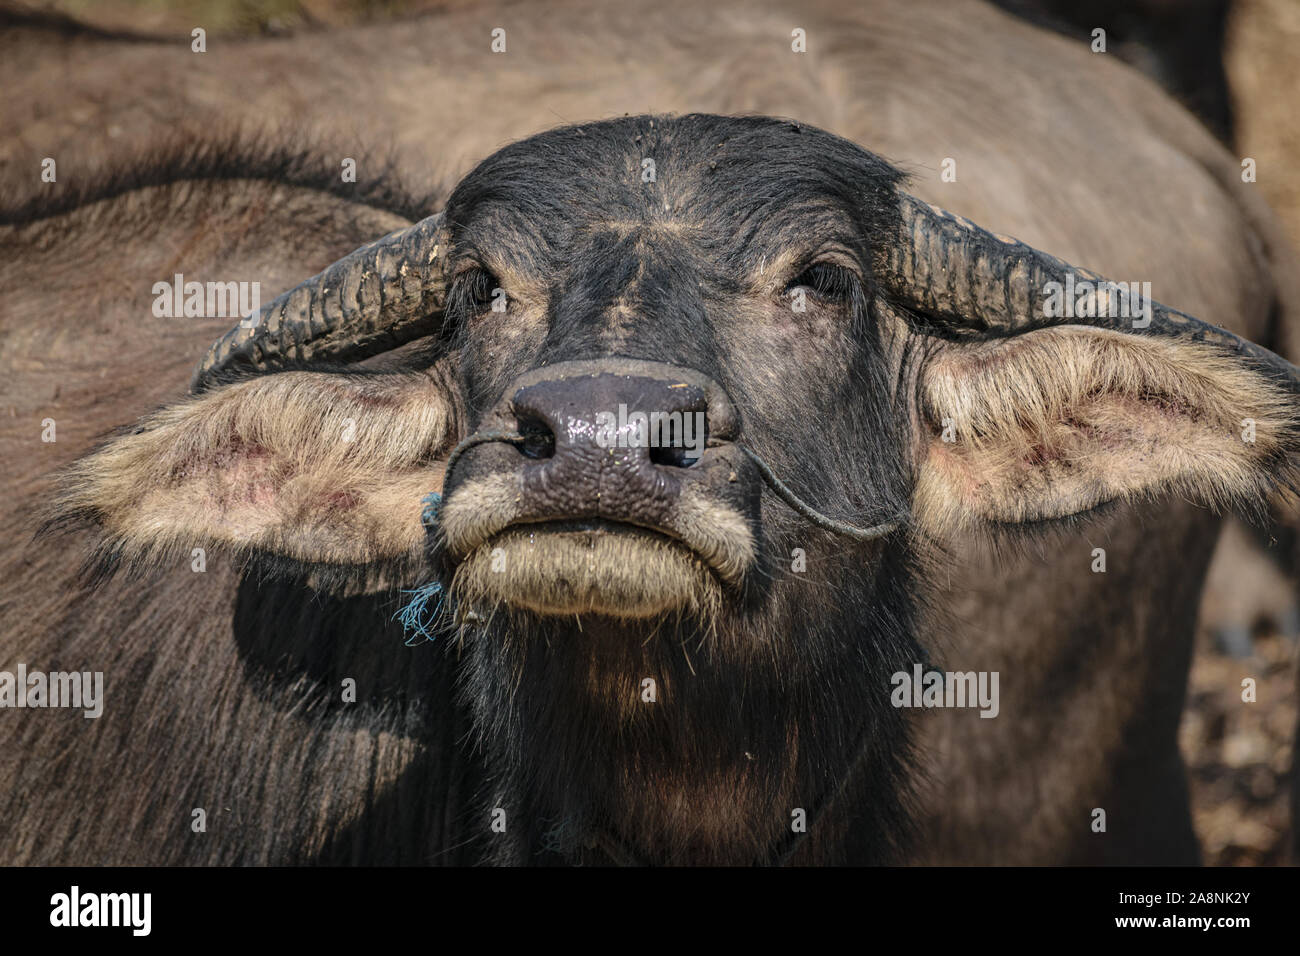 Water buffalo, Myanmar Stock Photo